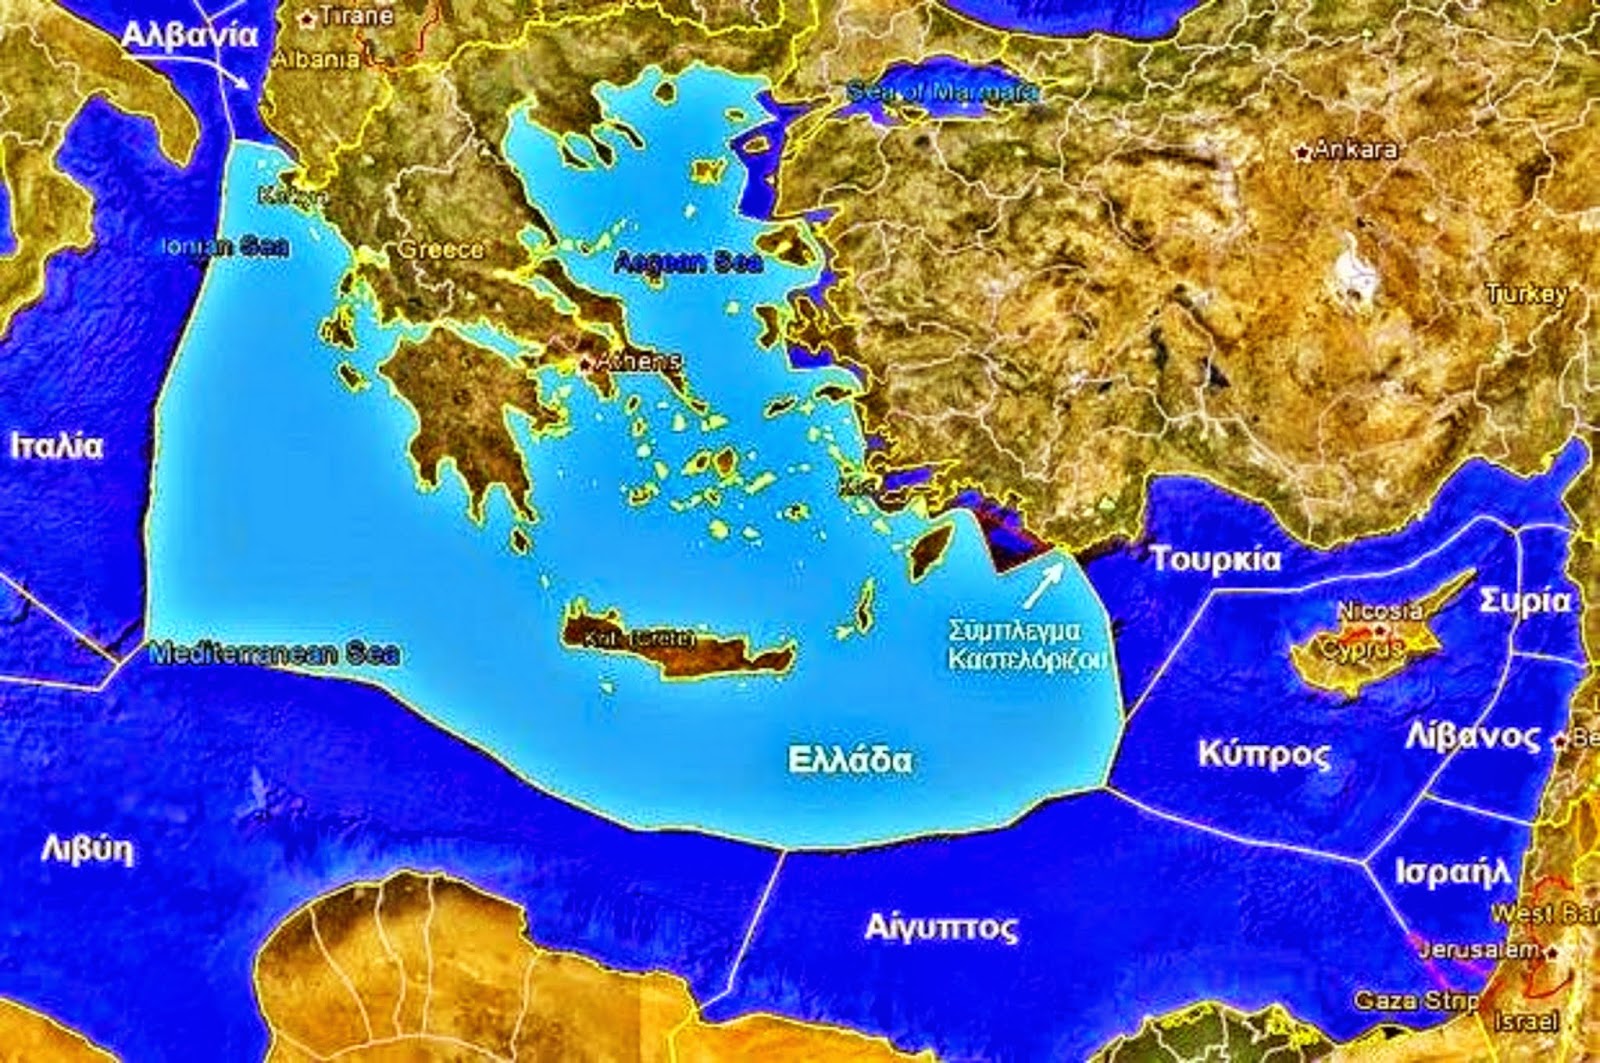 Η ΕΕ εξέδωσε χάρτη που δείχνει (σωστά) την ελληνική ΑΟΖ: Λίγες ημέρες μετά την «διχοτομημένη» Τουρκία του Μ.Πομπέο